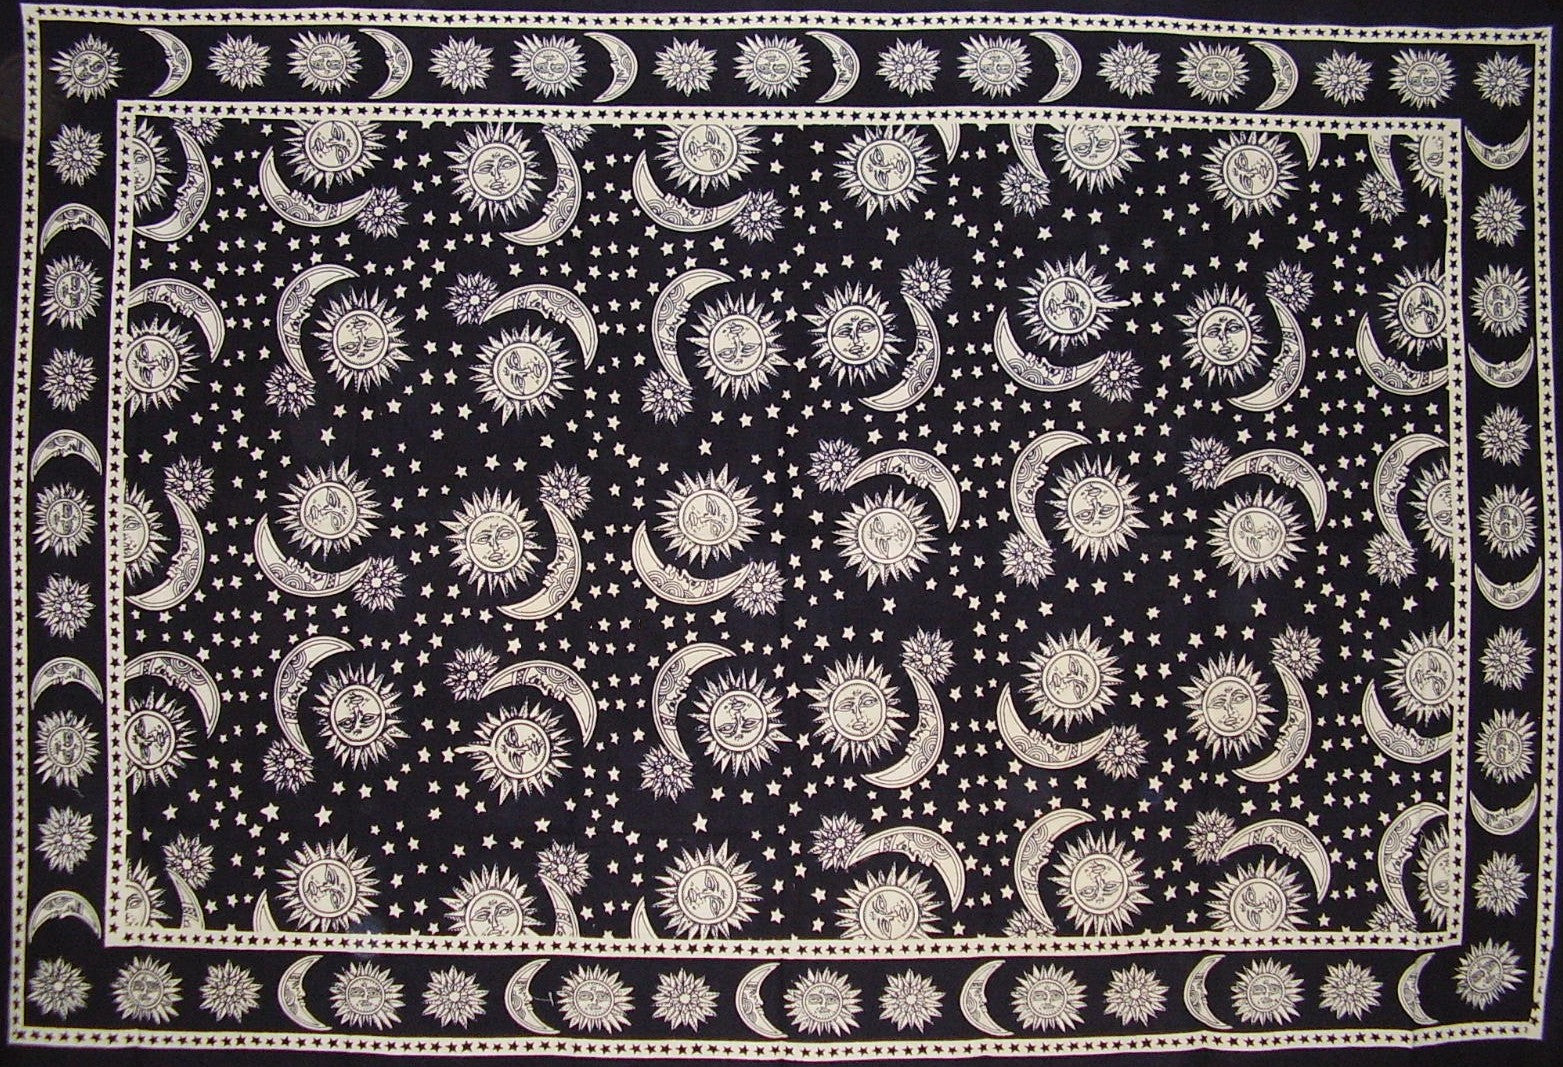 Tapiz con estampado de bloques celestiales, colcha o mantel doble de algodón, 106 "x 70", blanco y negro